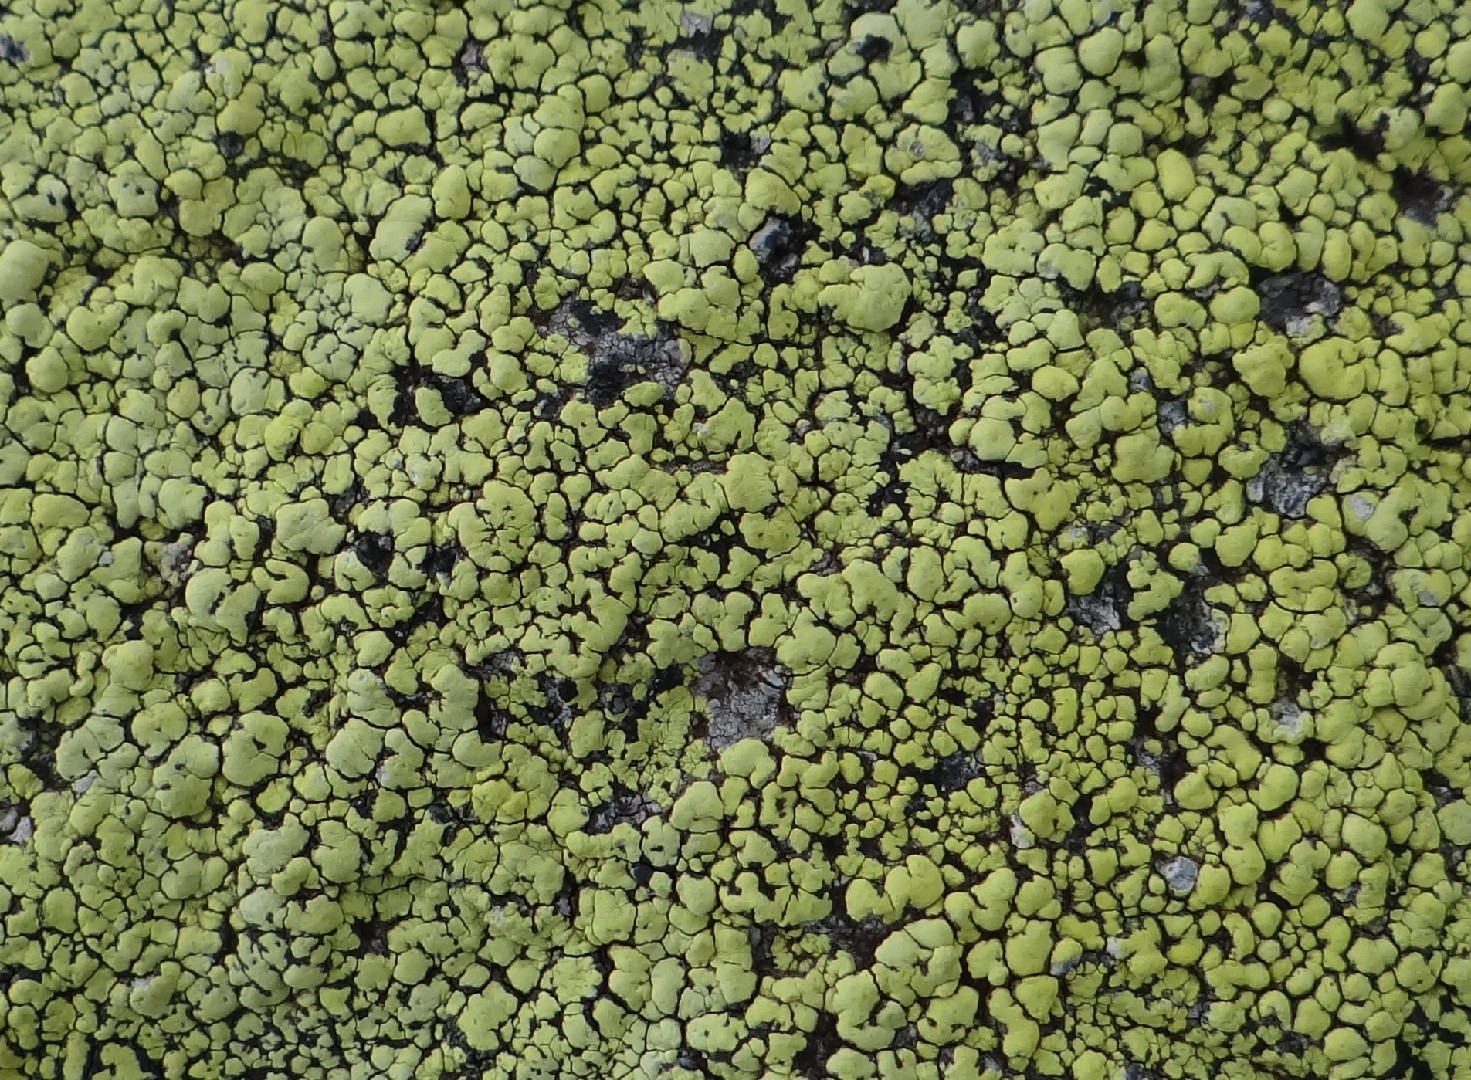 Map lichen (Rhizocarpon geographicum)